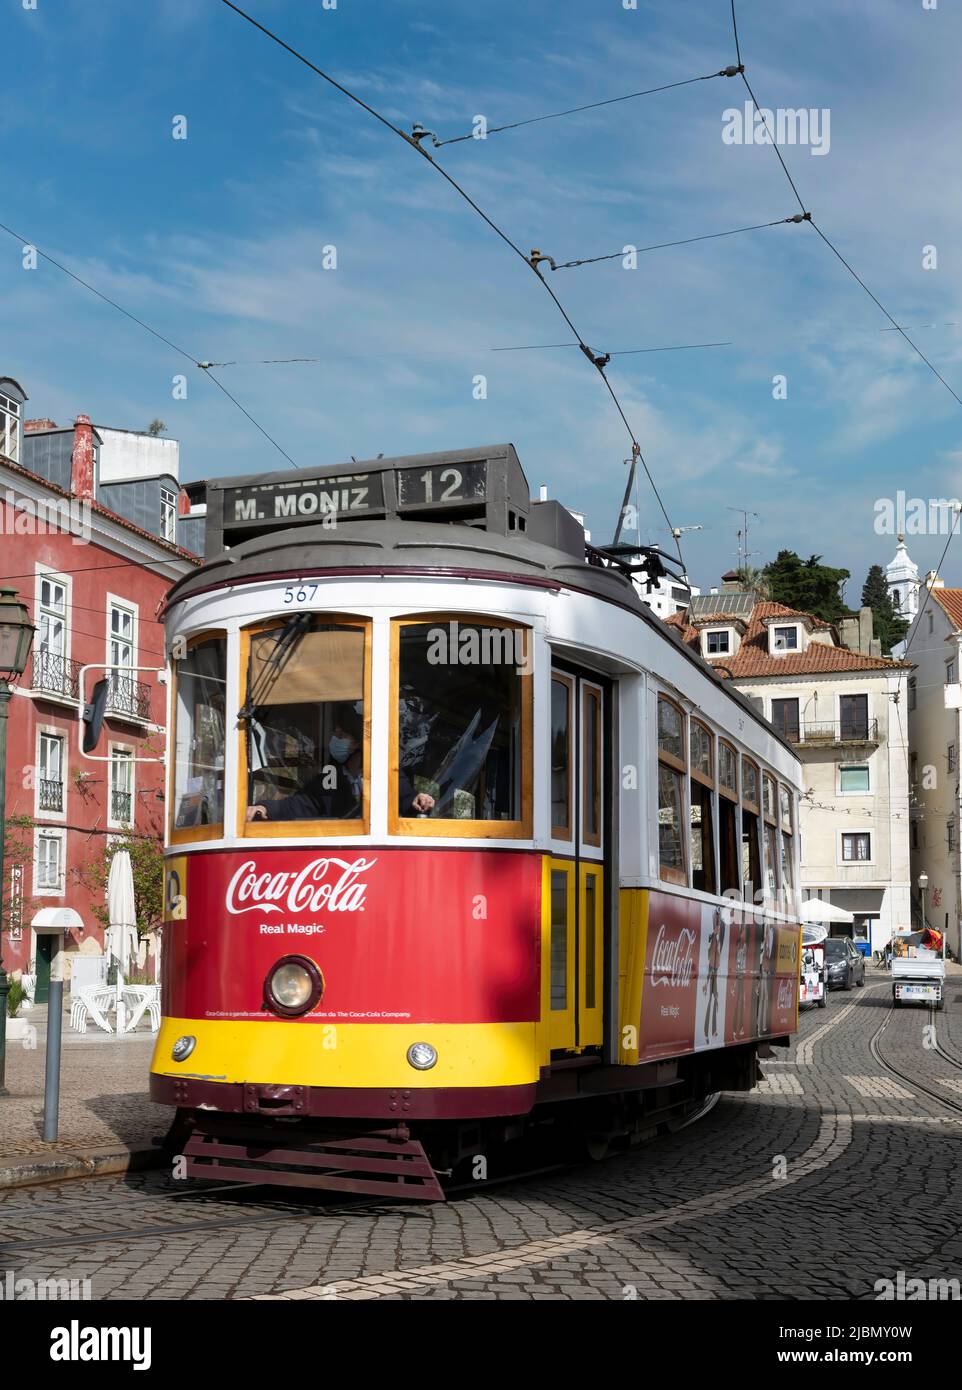 Eine traditionelle rote Straßenbahn fährt über die nassen, gepflasterten Straßen im Zentrum von Lissabon, der Hauptstadt Portugals Stockfoto